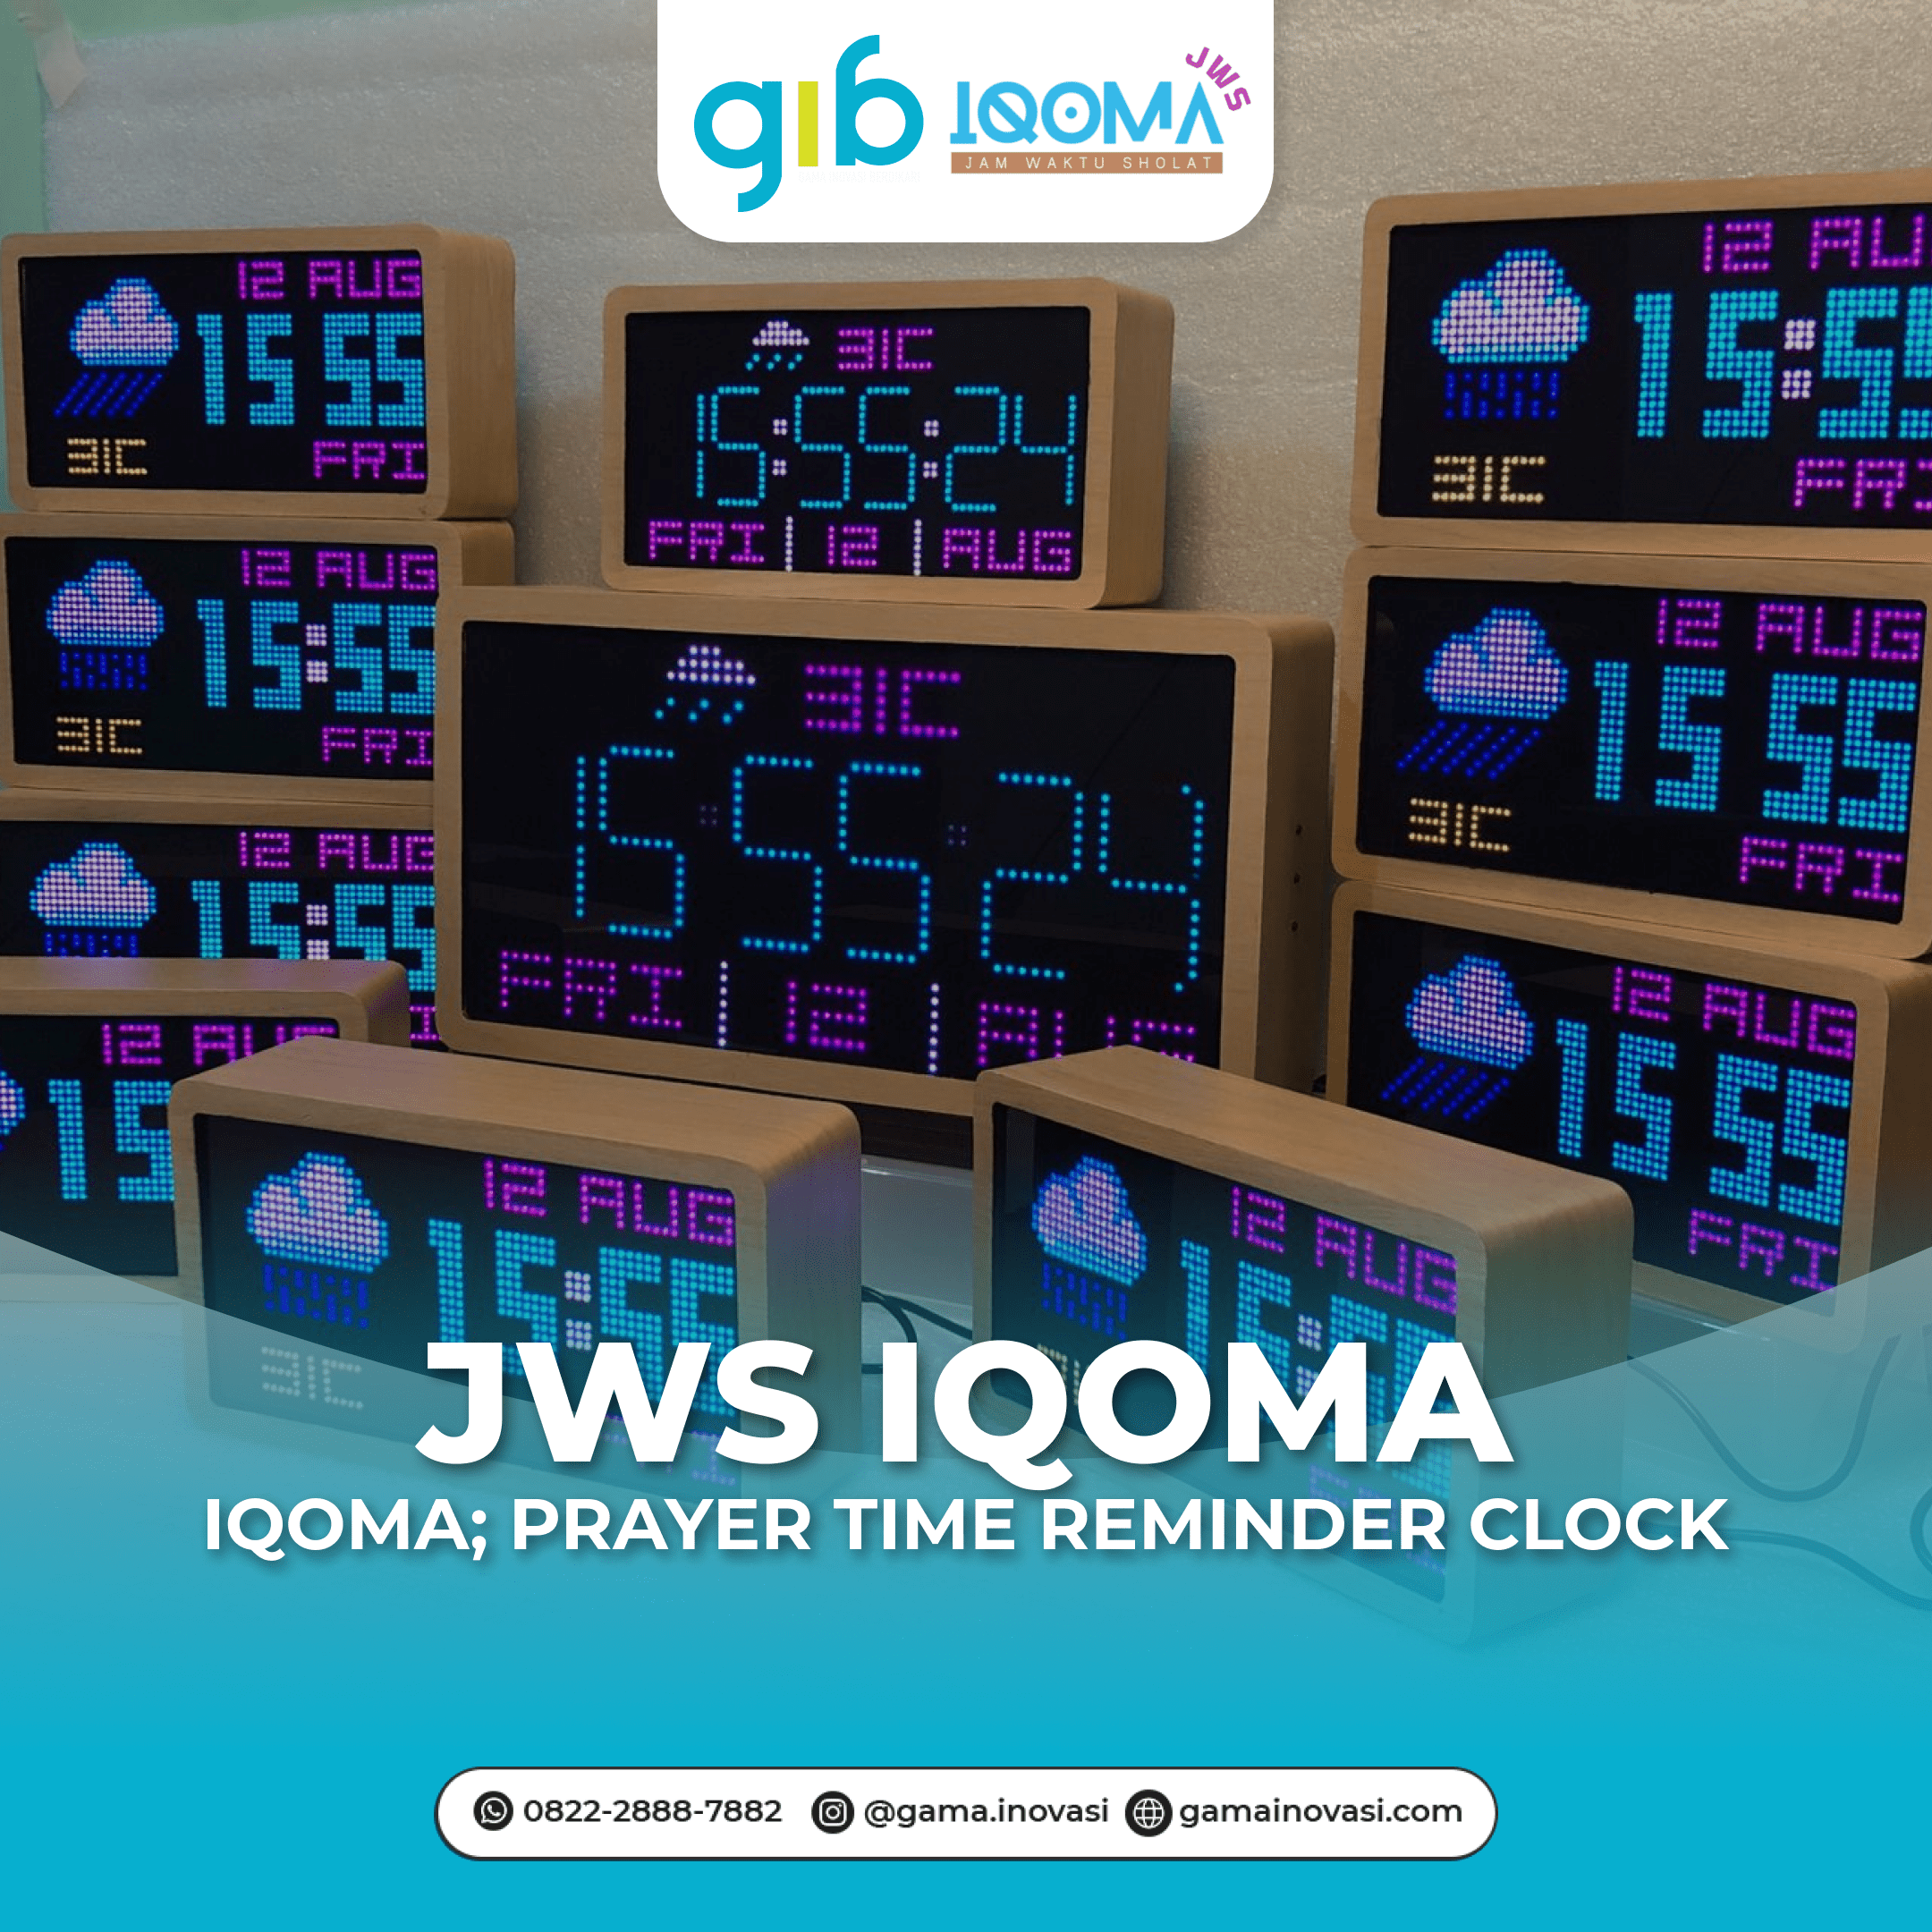 JWS IQOMA: Prayer Time Reminder Clock